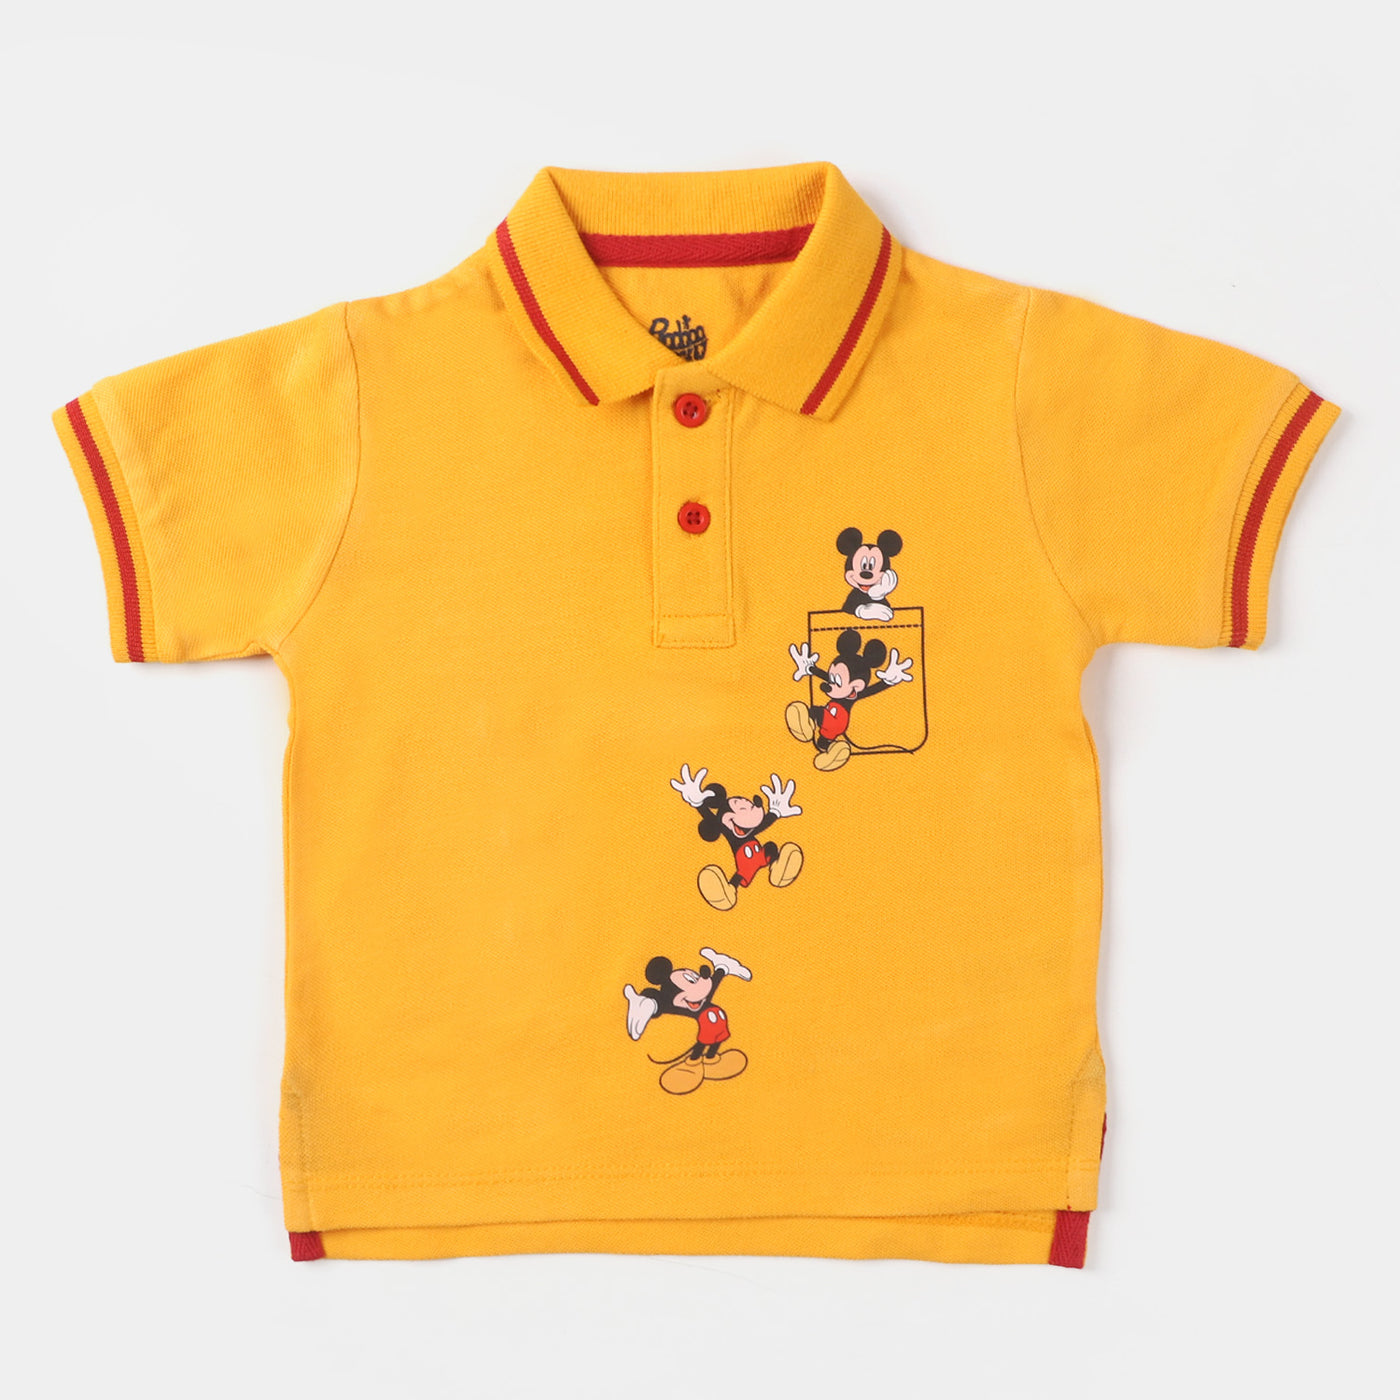 Infant Boys Cotton Polo T-Shirt - Citrus